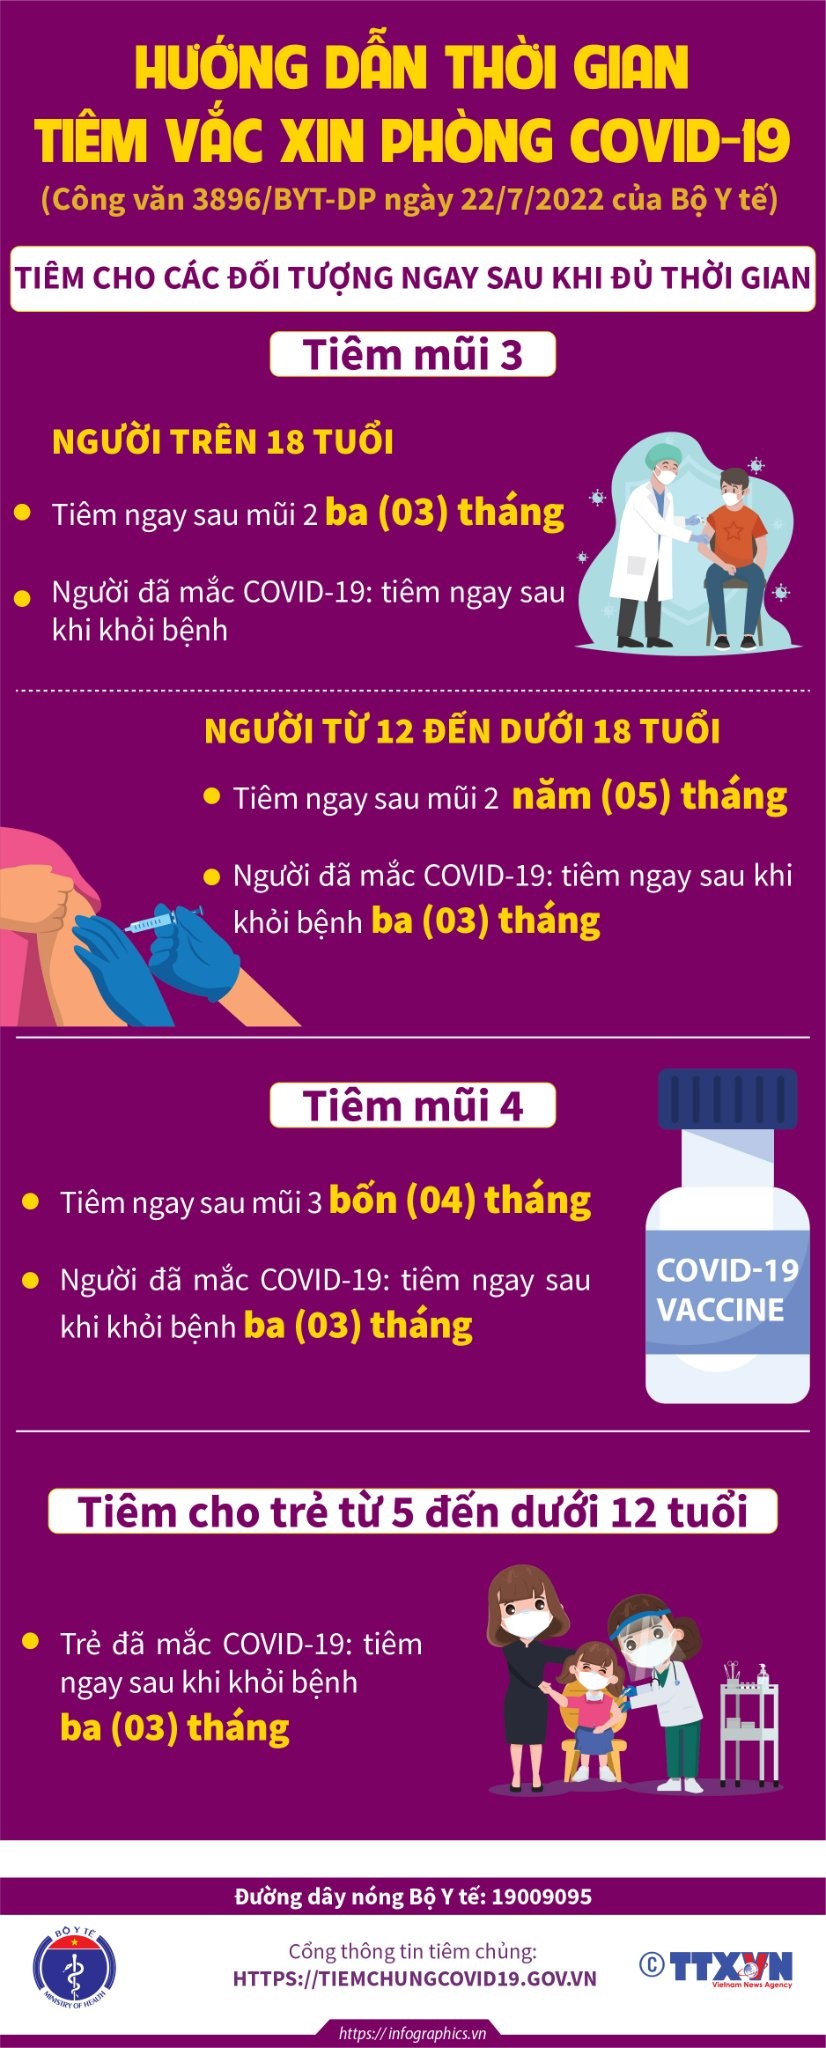 hướng dẫn thời gian tiêm vắc xin phòng COVID-19 mũi 3, mũi 4 và trẻ em từ 5 đến dưới 12 tuổi.